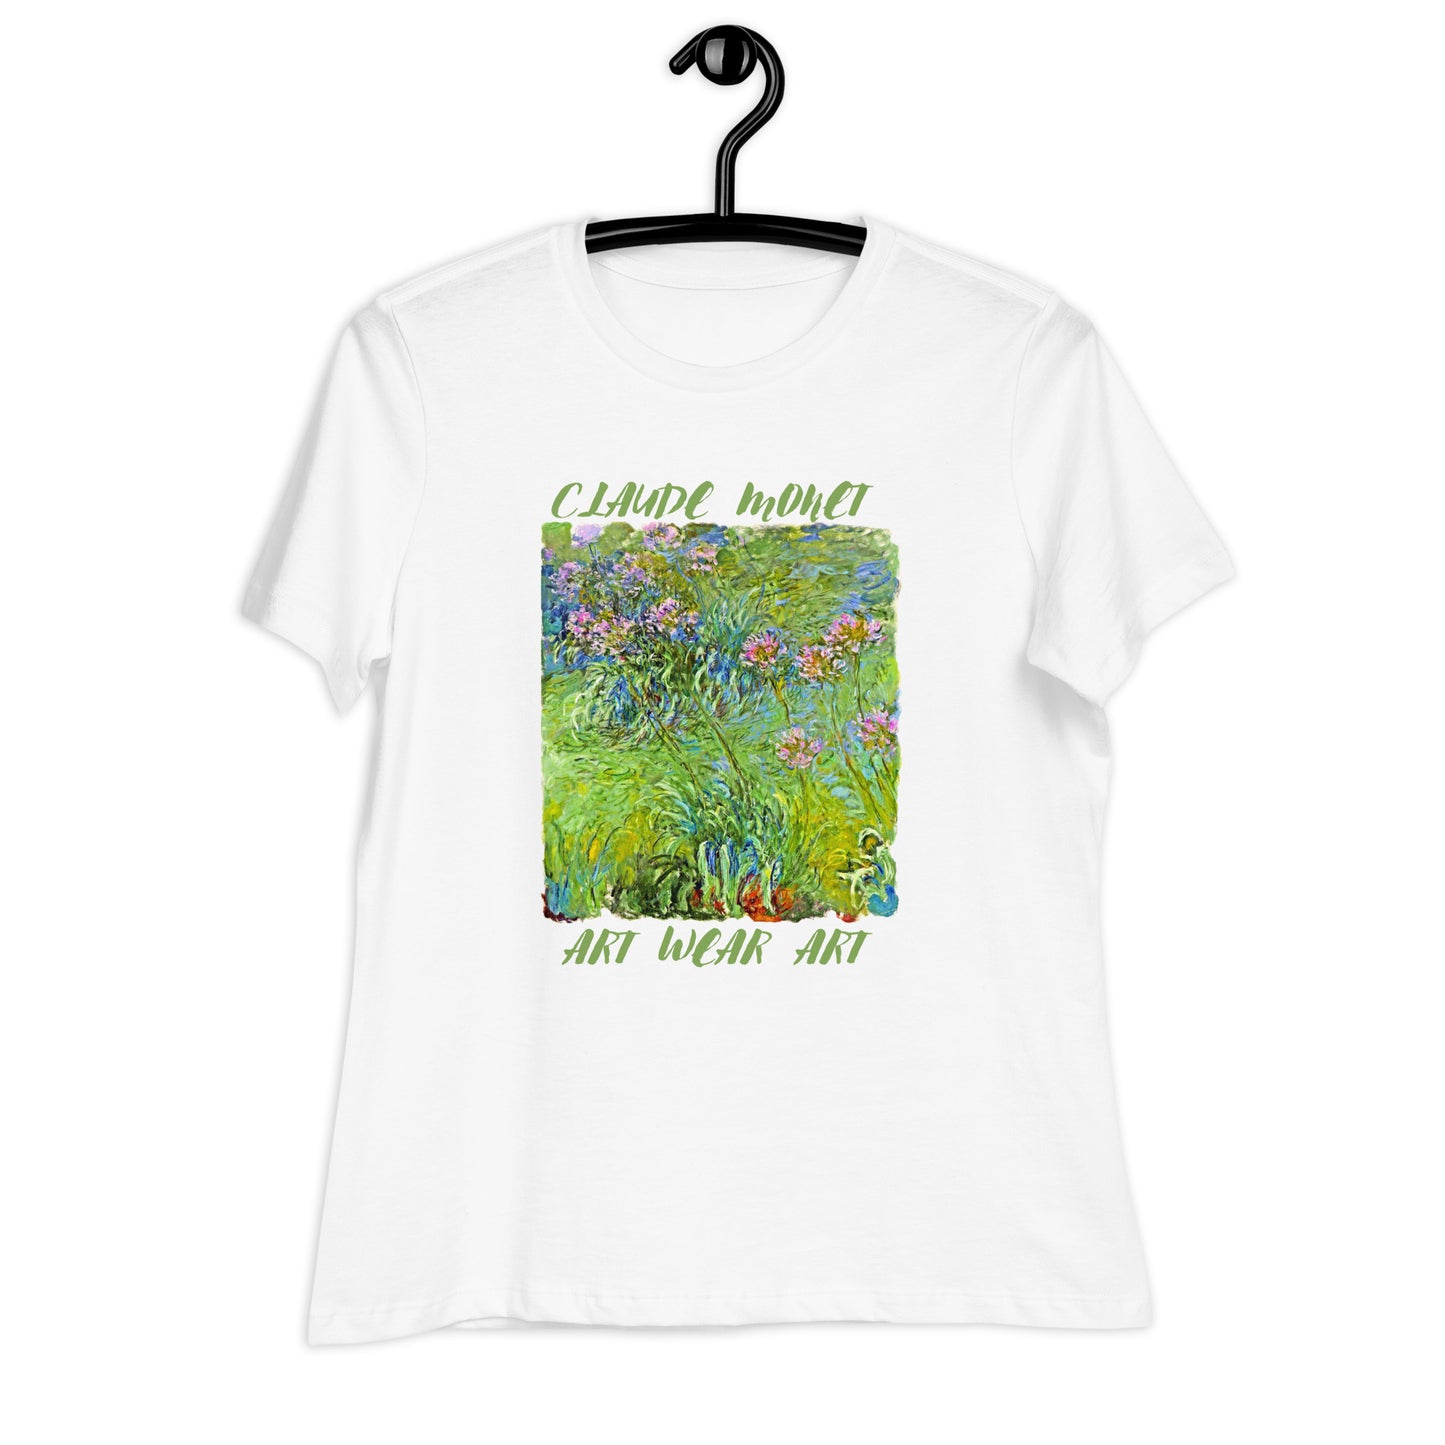 Women's Relaxed T-Shirt Art Wear Claude Monet